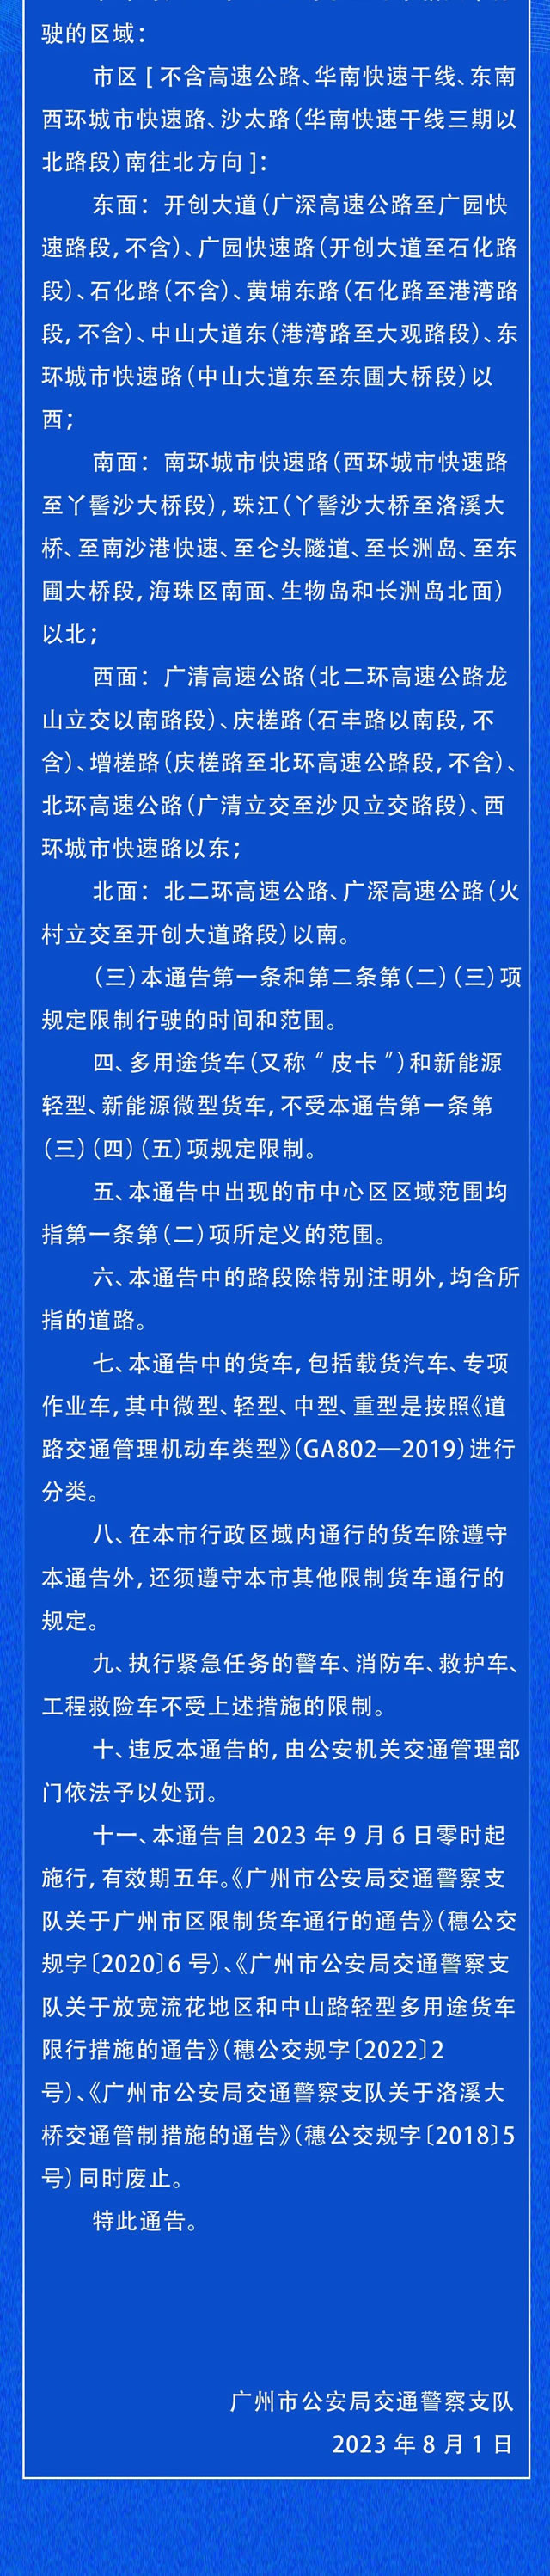 广州货车限行调整新政策正式施行